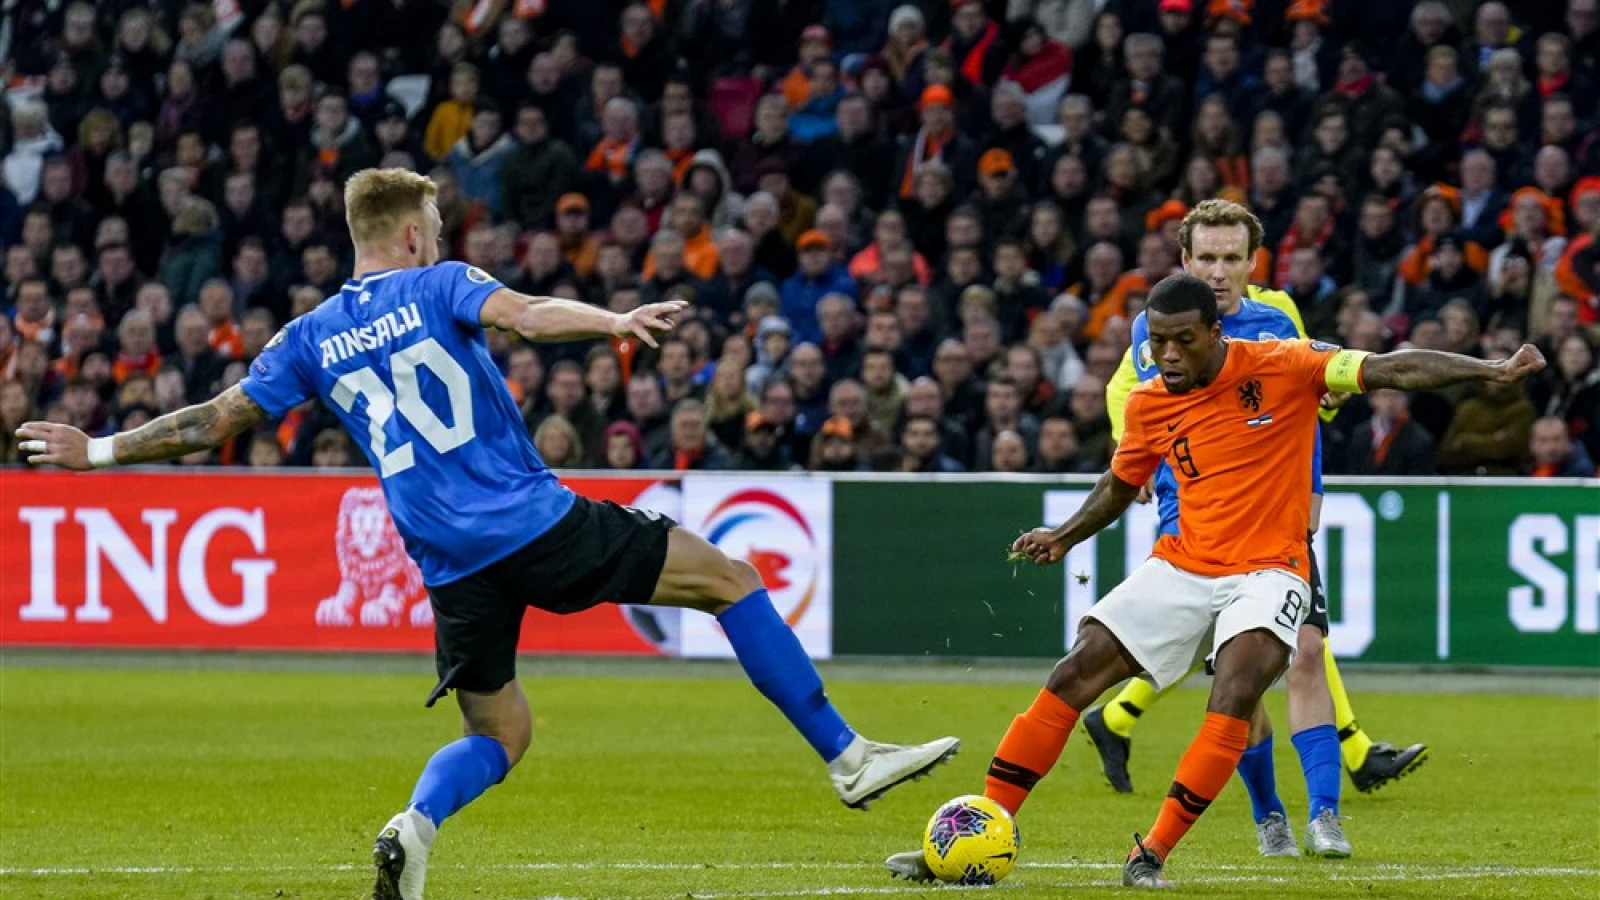 Oranje wint door hattrick Wijnaldum van Estland